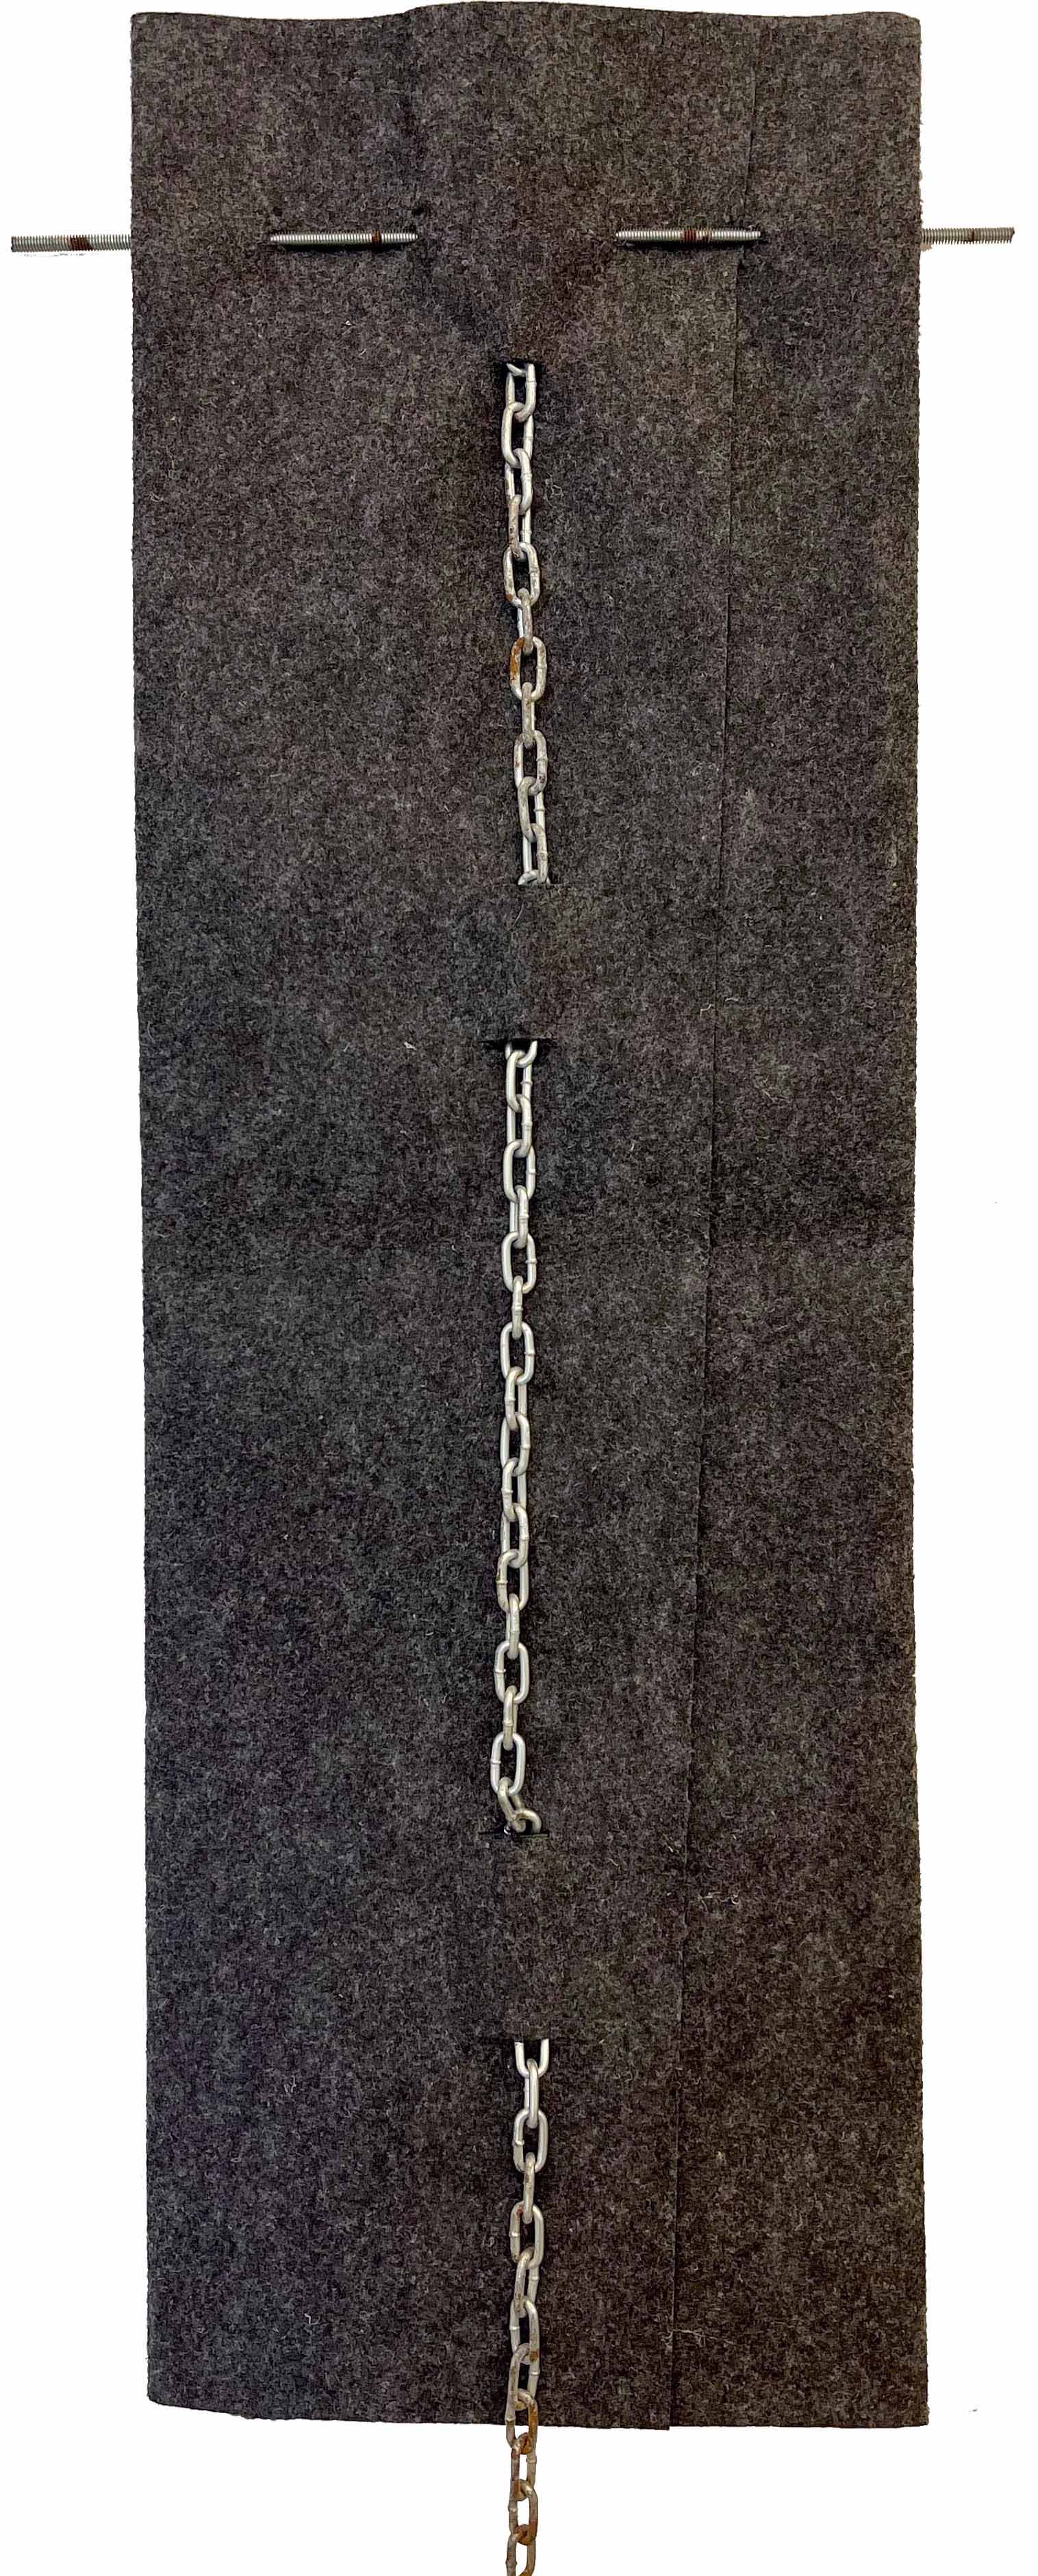 02. Almandrade, Sem título, 1983, Carpete barra rosacada e corrente, 109 x 33 cm